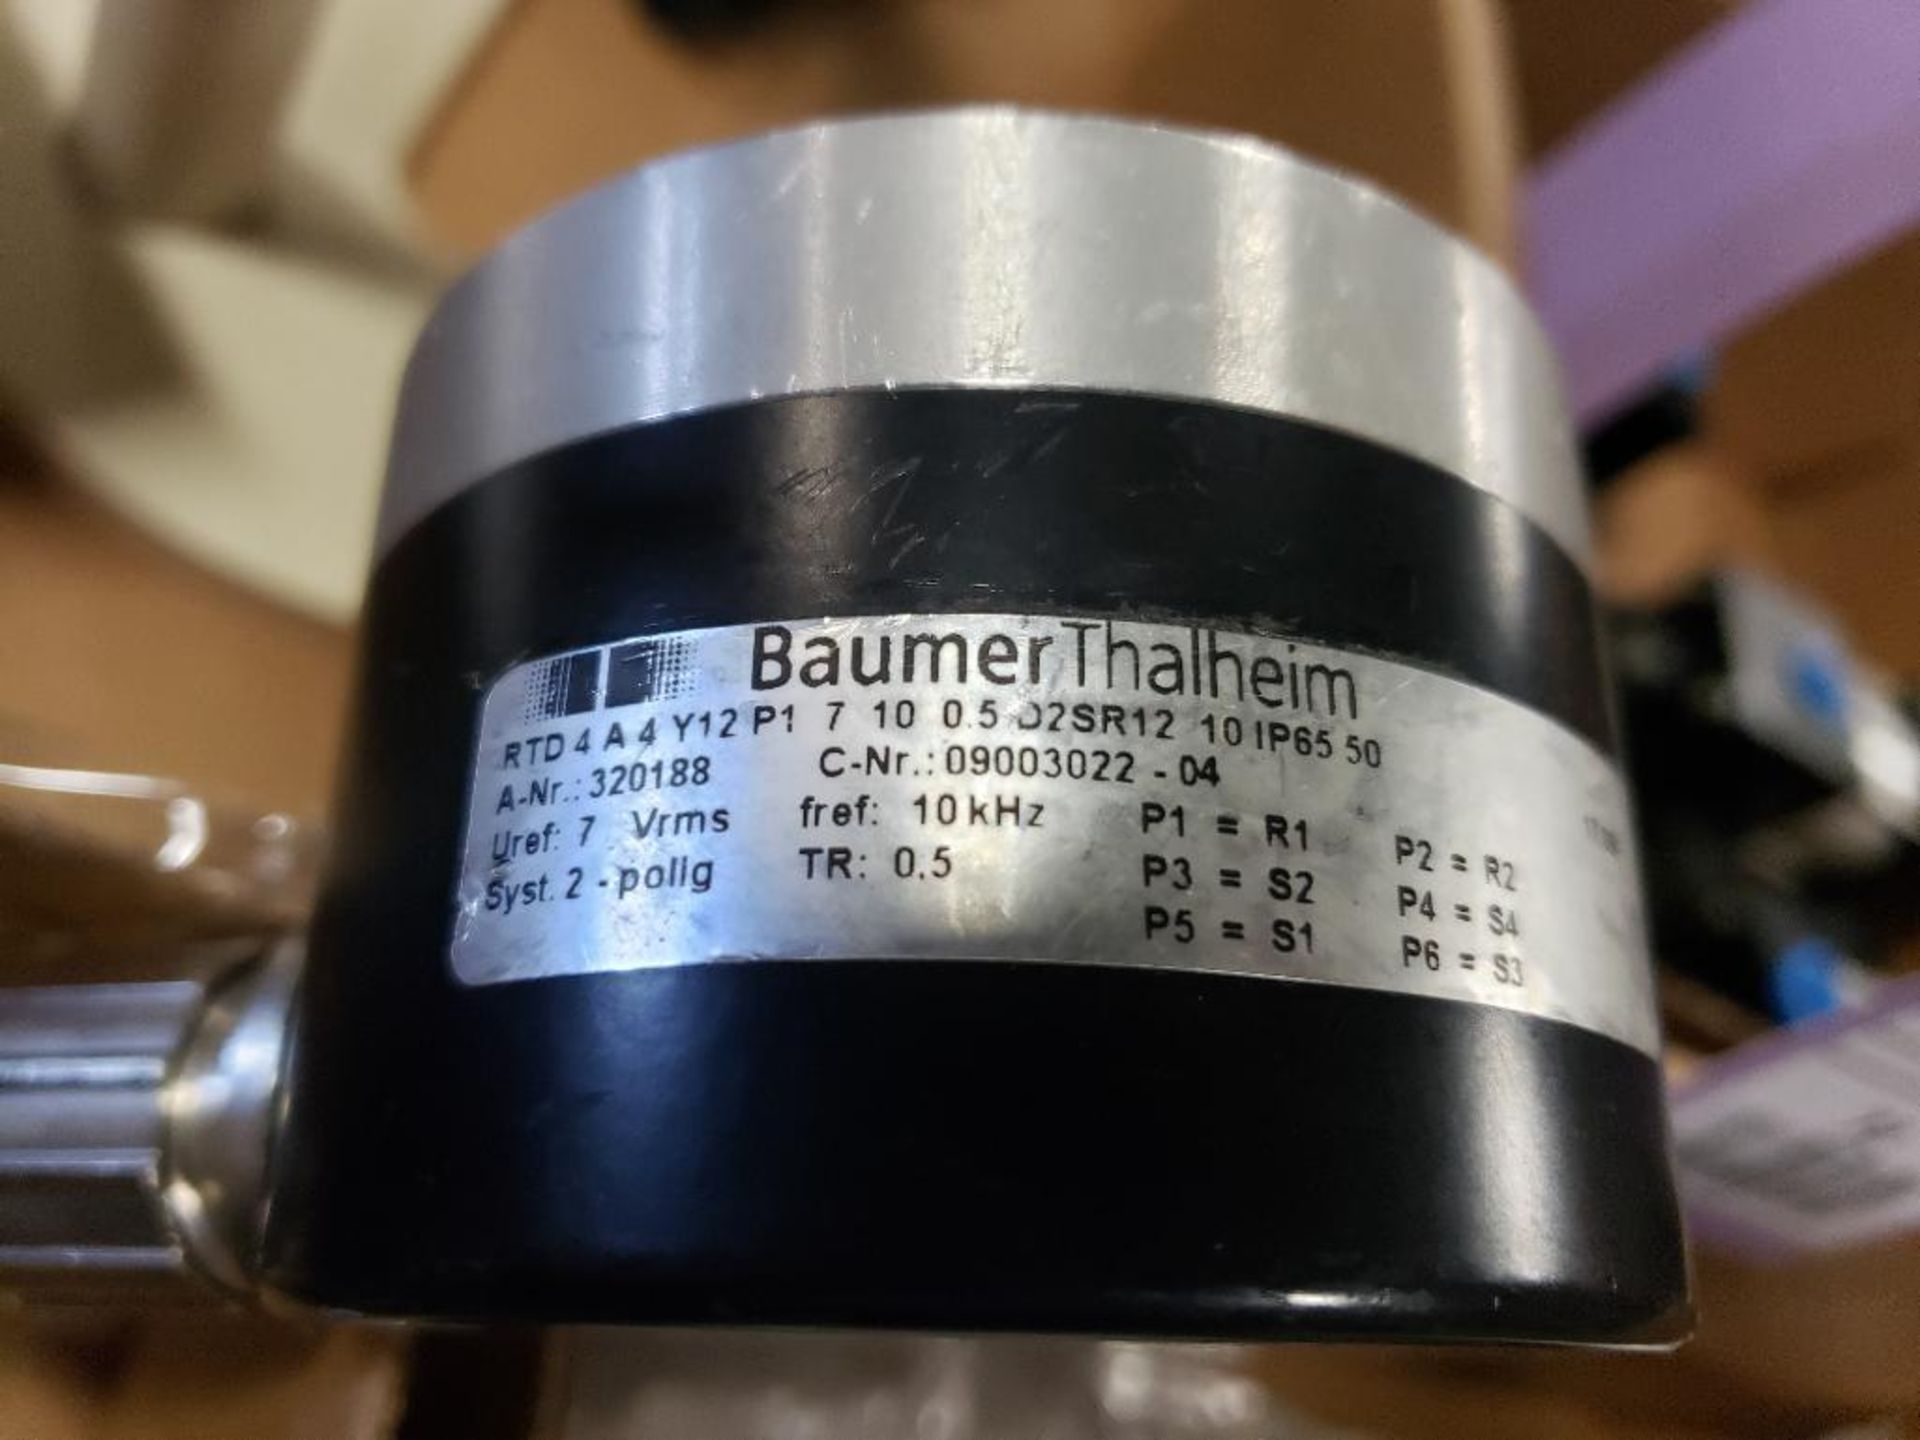 Qty 2 - Baumer Thalheim rotary encoder. - Image 5 of 5